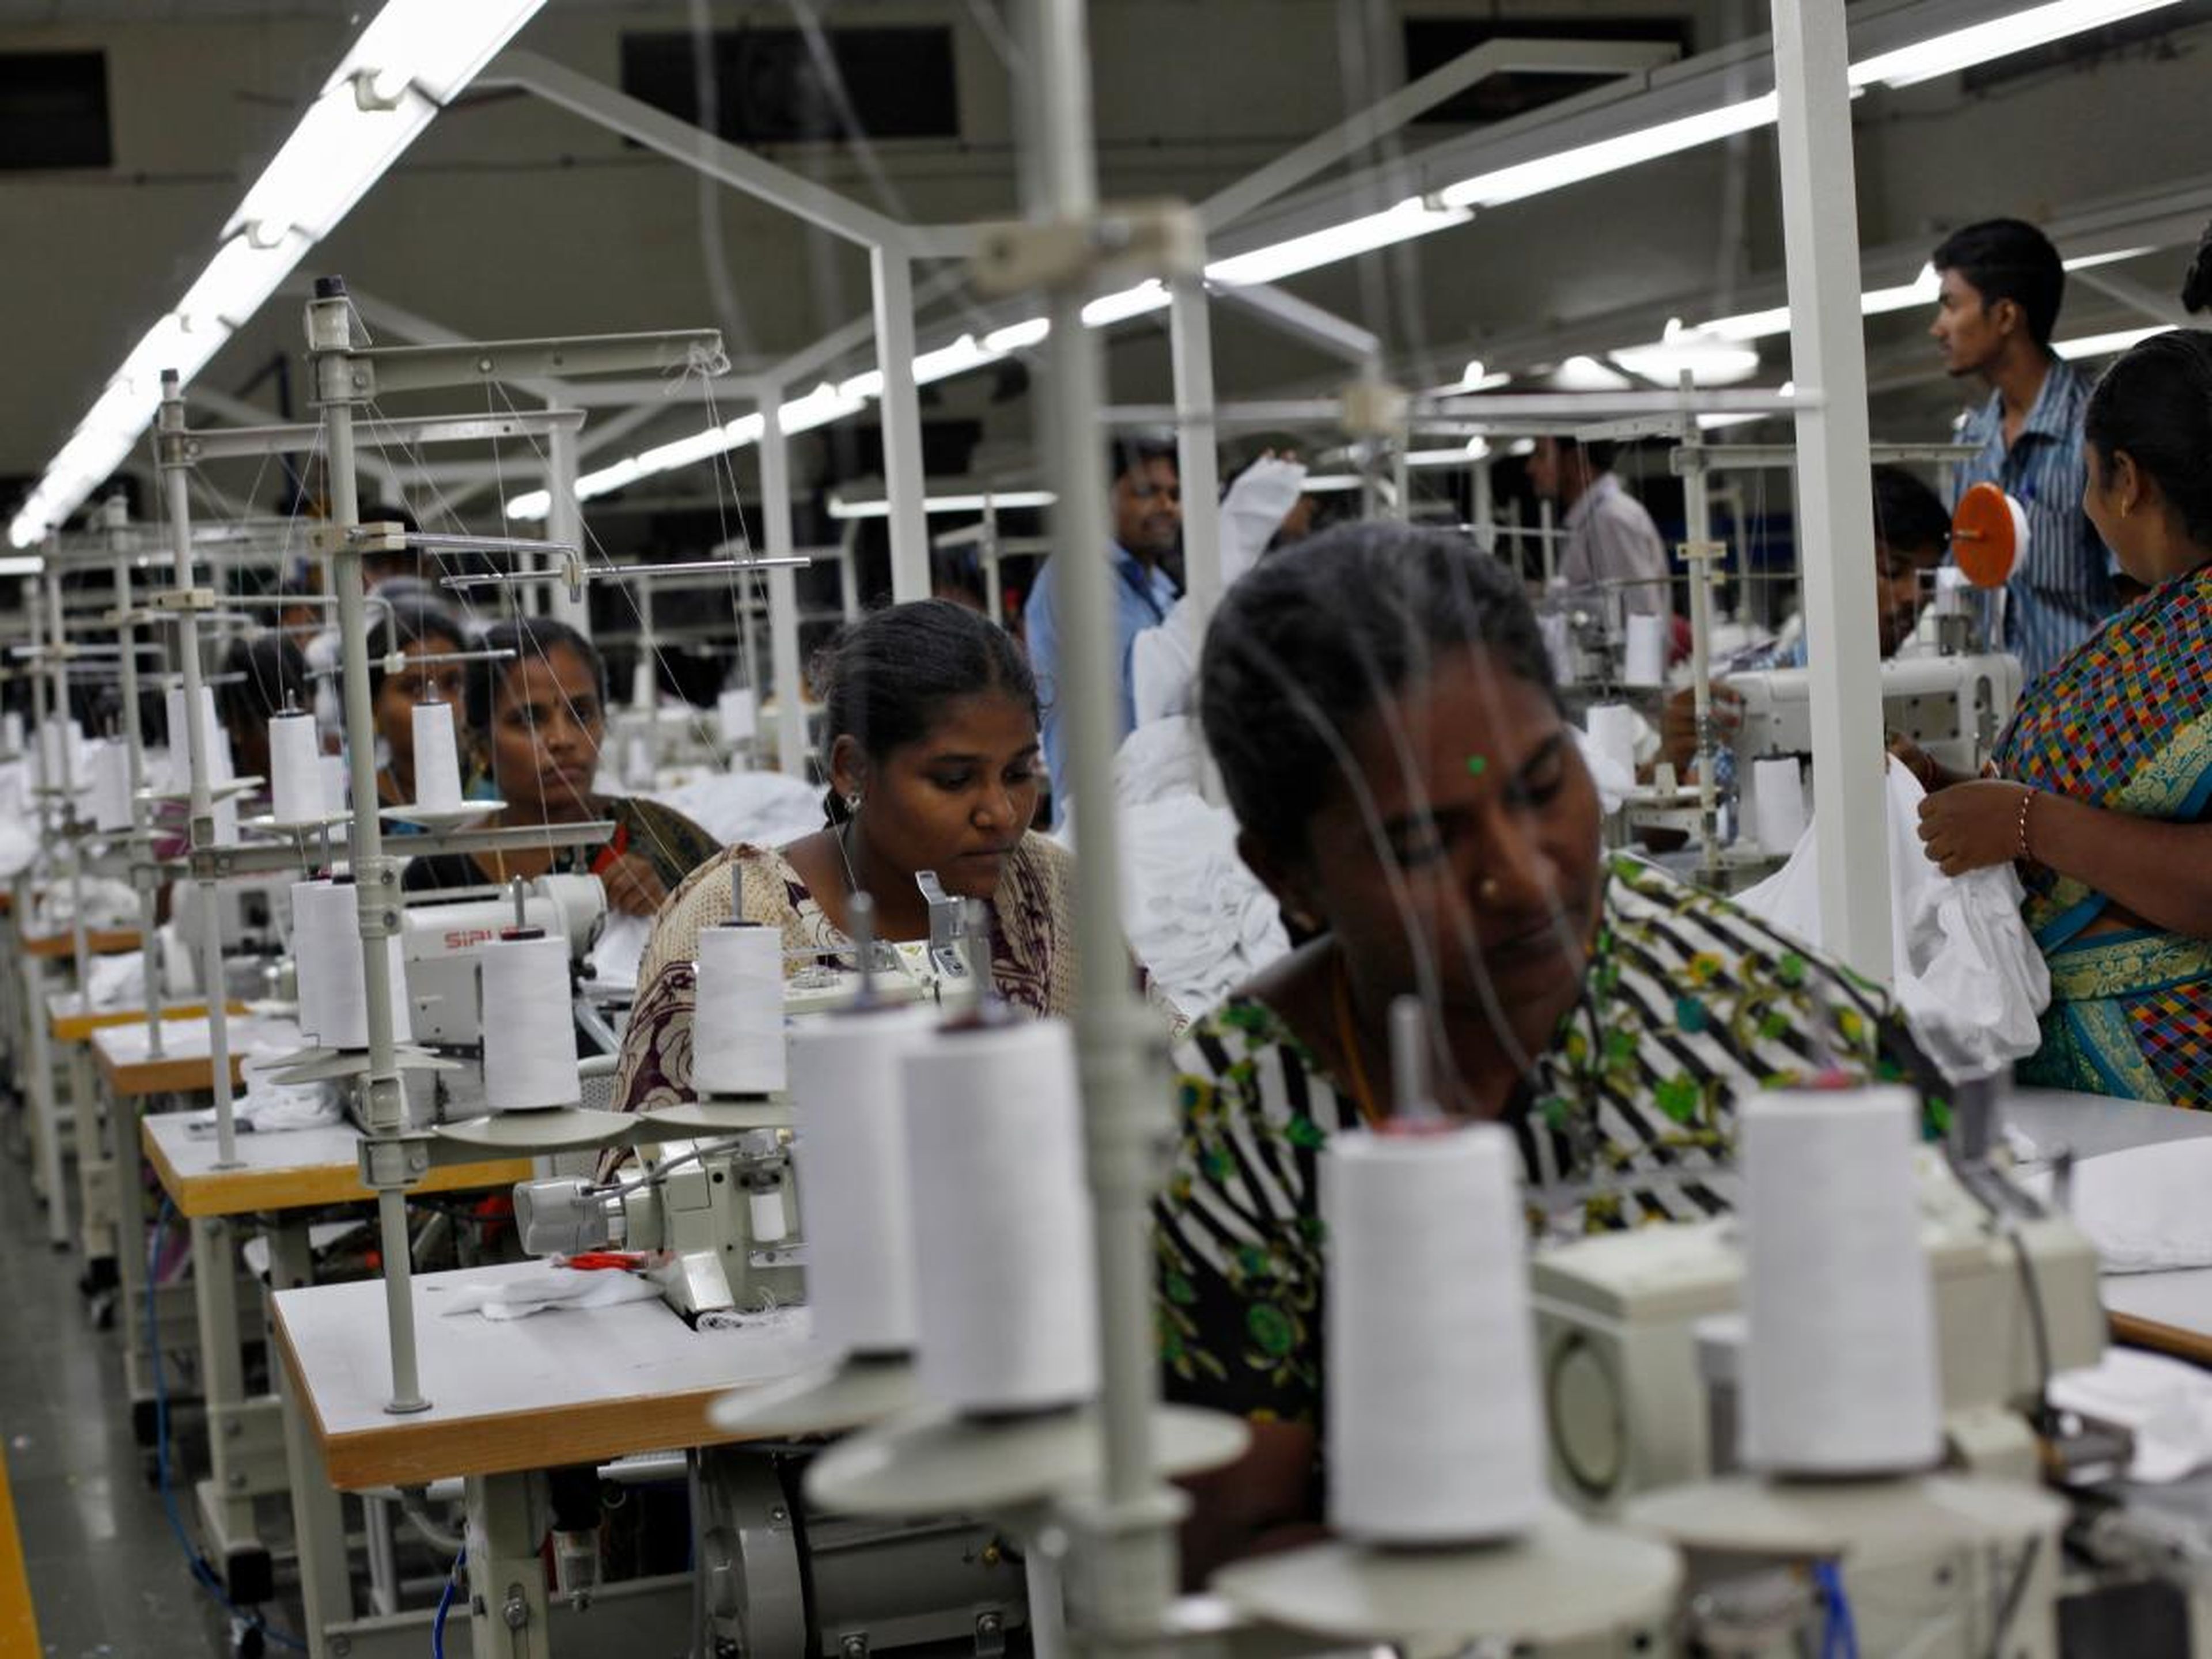 Empleados cosen ropa en una fábrica de ropa en la India.